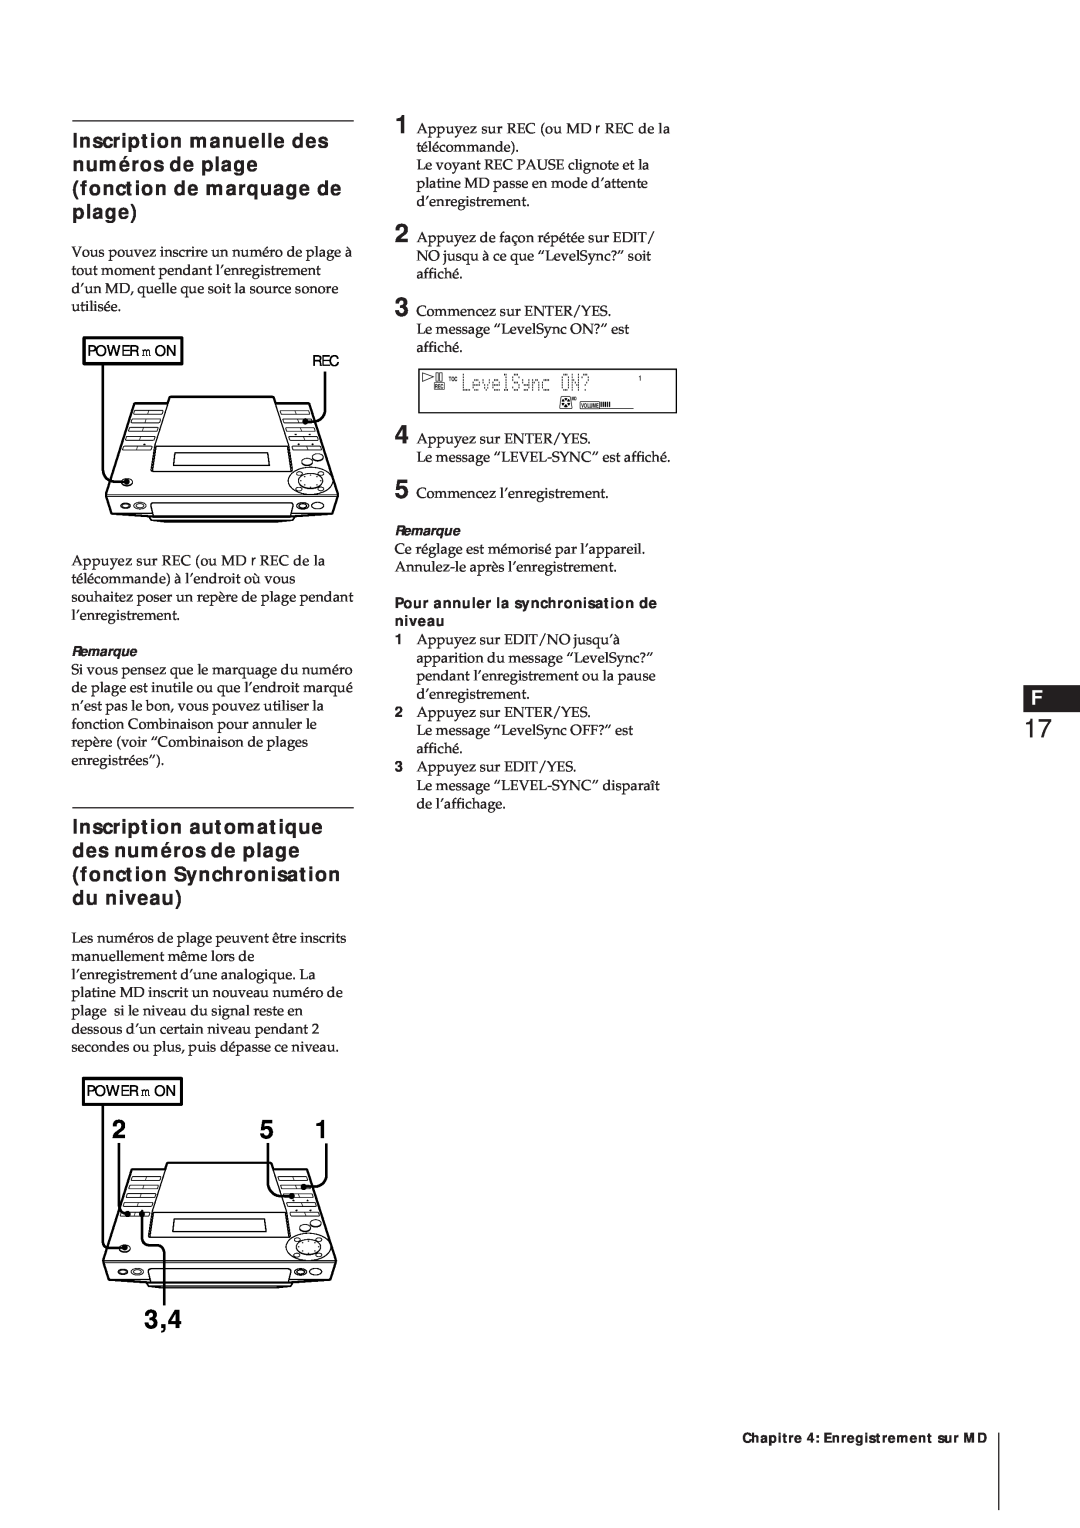 Sony MJ-L1A manual Pour annuler la synchronisation de niveau 